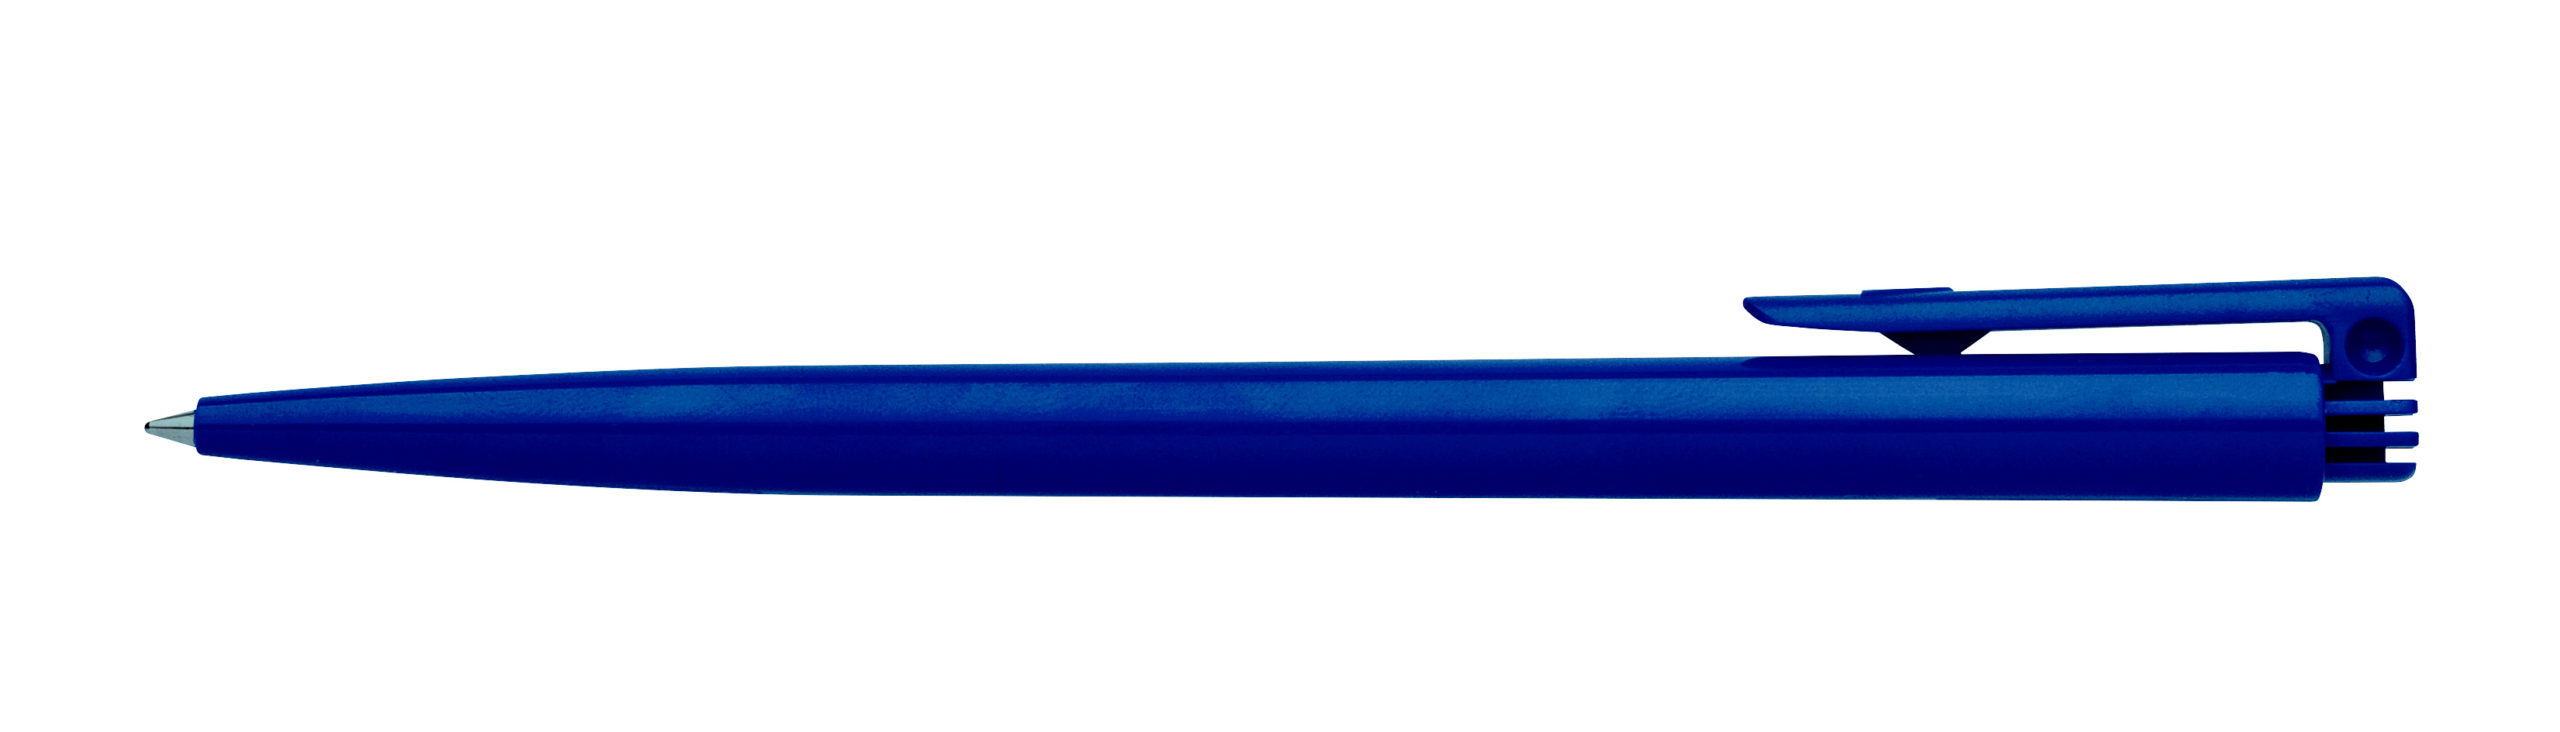 Kemijska olovka Star C jednobojna - PROMO